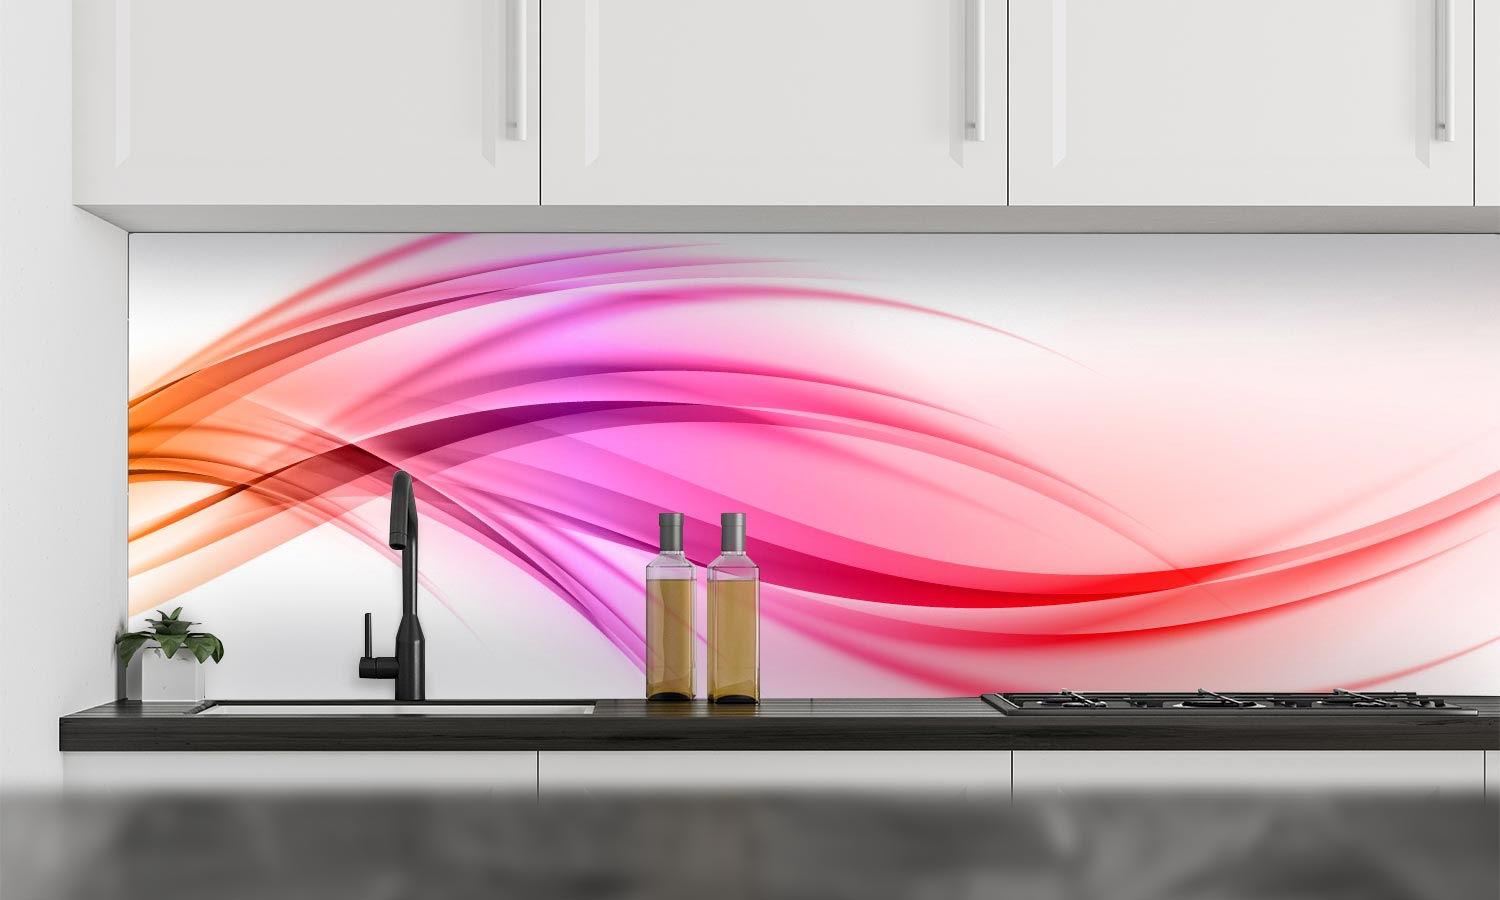 Kuhinjski paneli  Color line - Stekleni / PVC plošče / Pleksi steklo - s tiskom za kuhinjo, Stenske obloge PKU035 - Life-decor.si